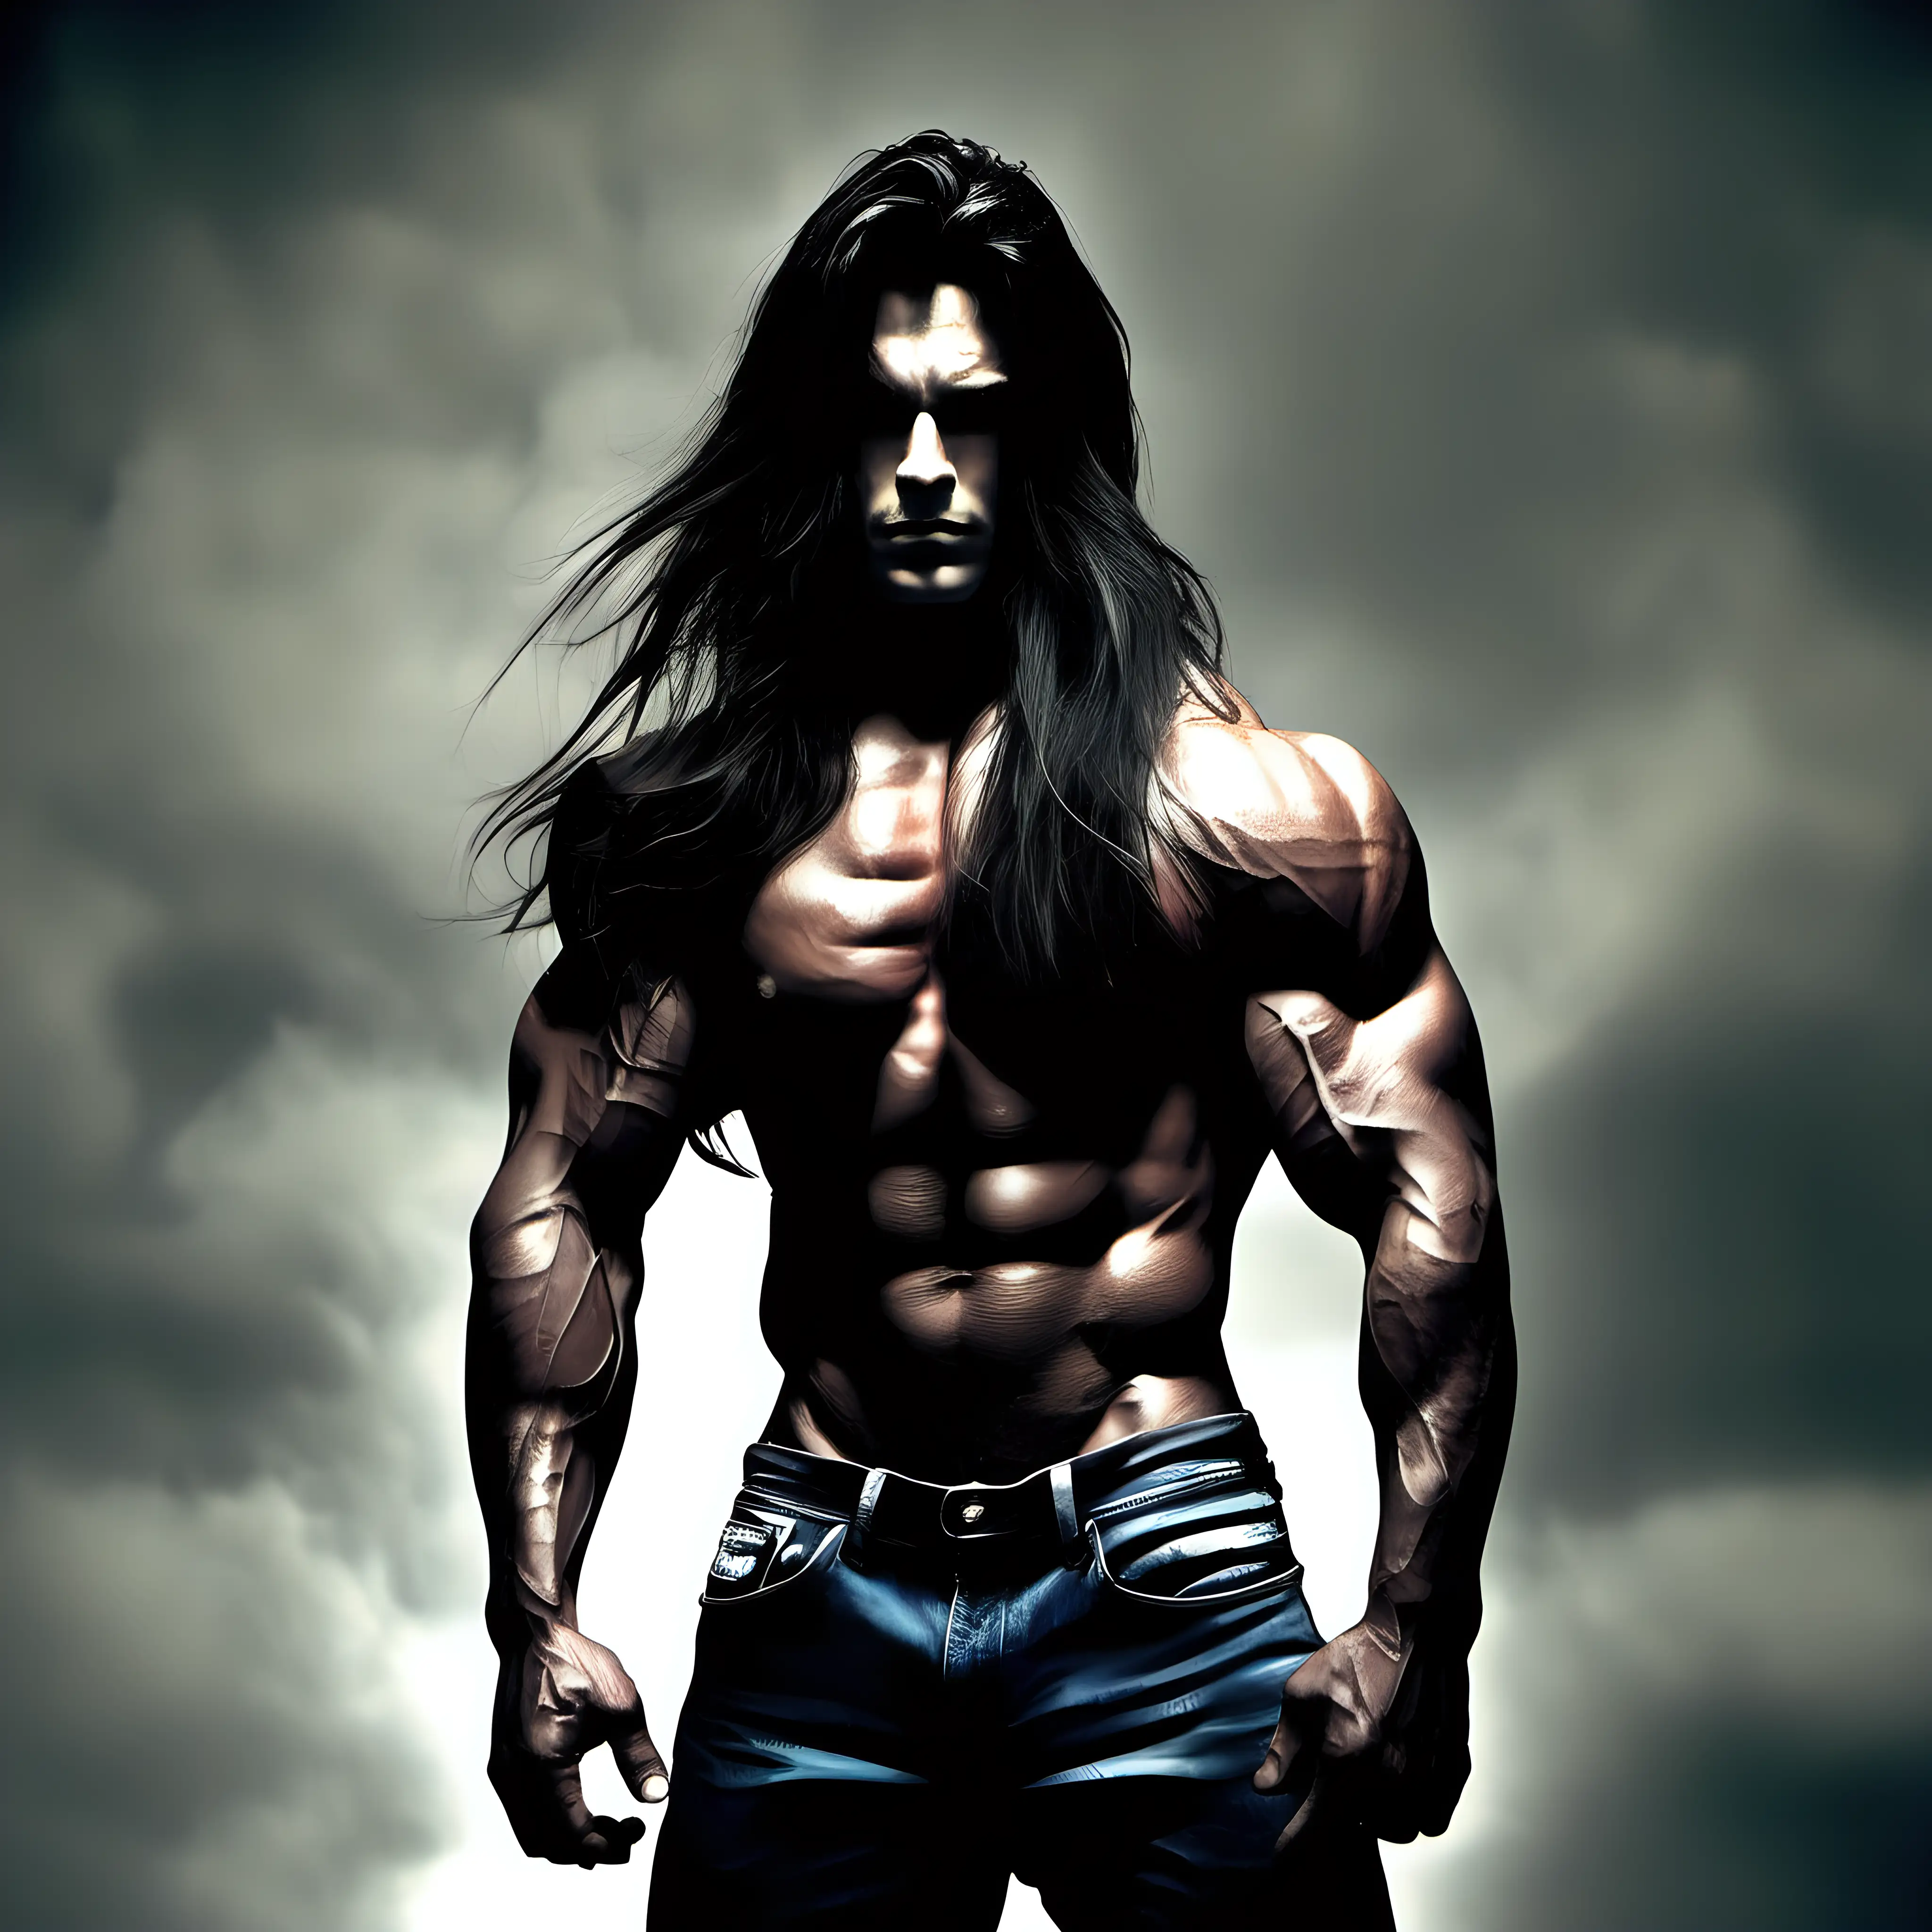 Handsome Grunge Bodybuilder with Long Dark Hair